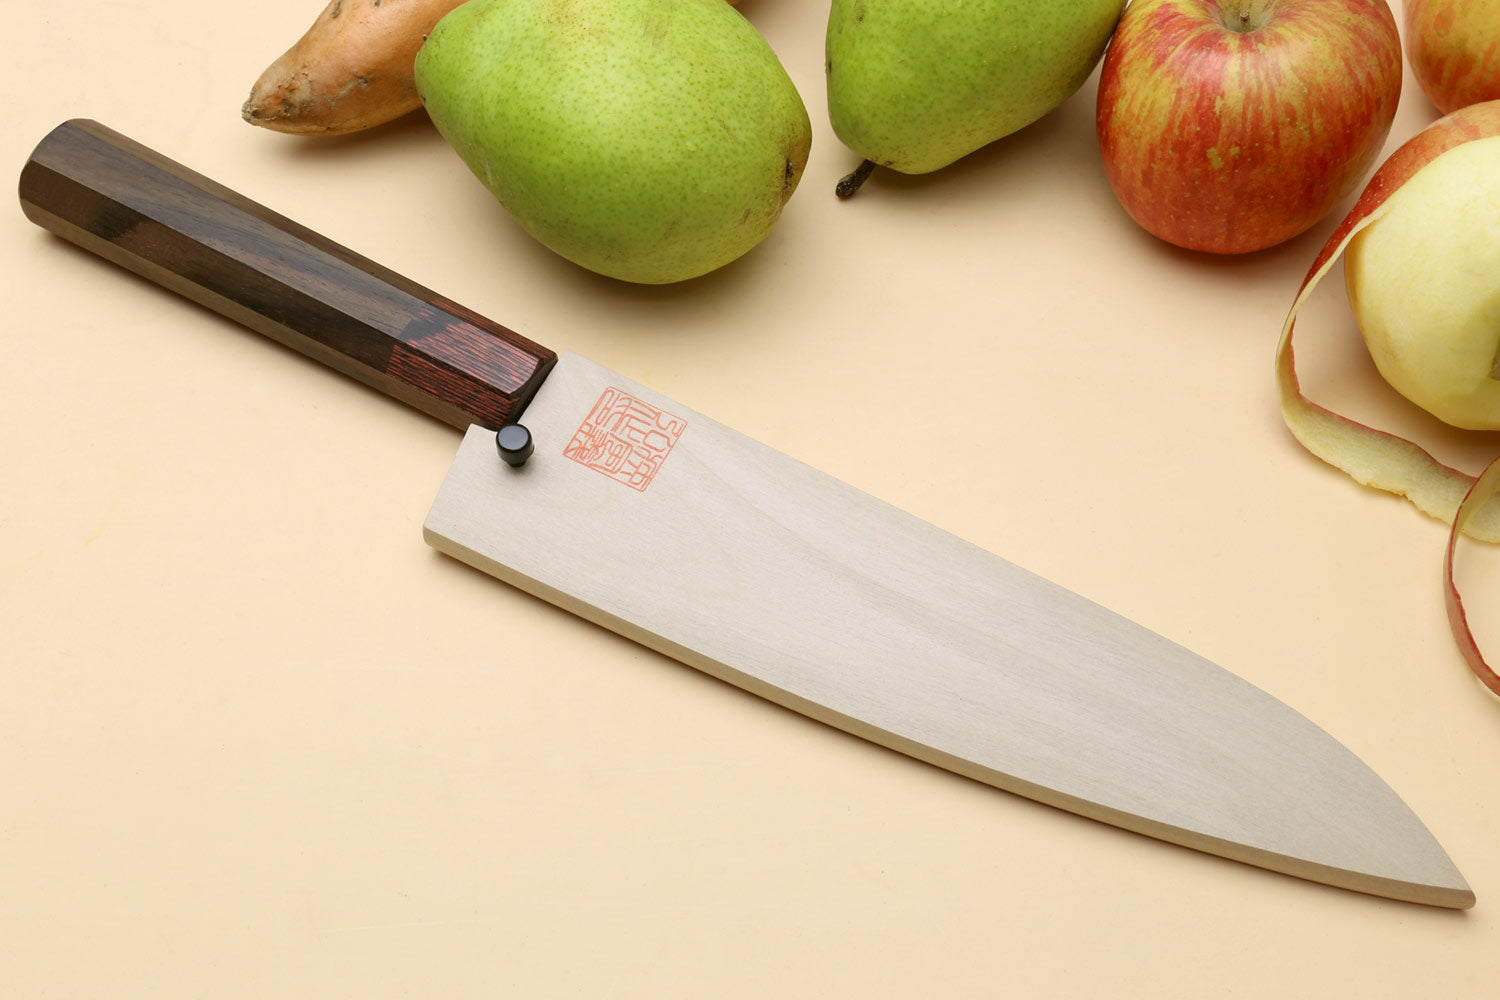 Samurai Chef - Gyuto K-tip 10in Chef's Knife - Samurai Damascus